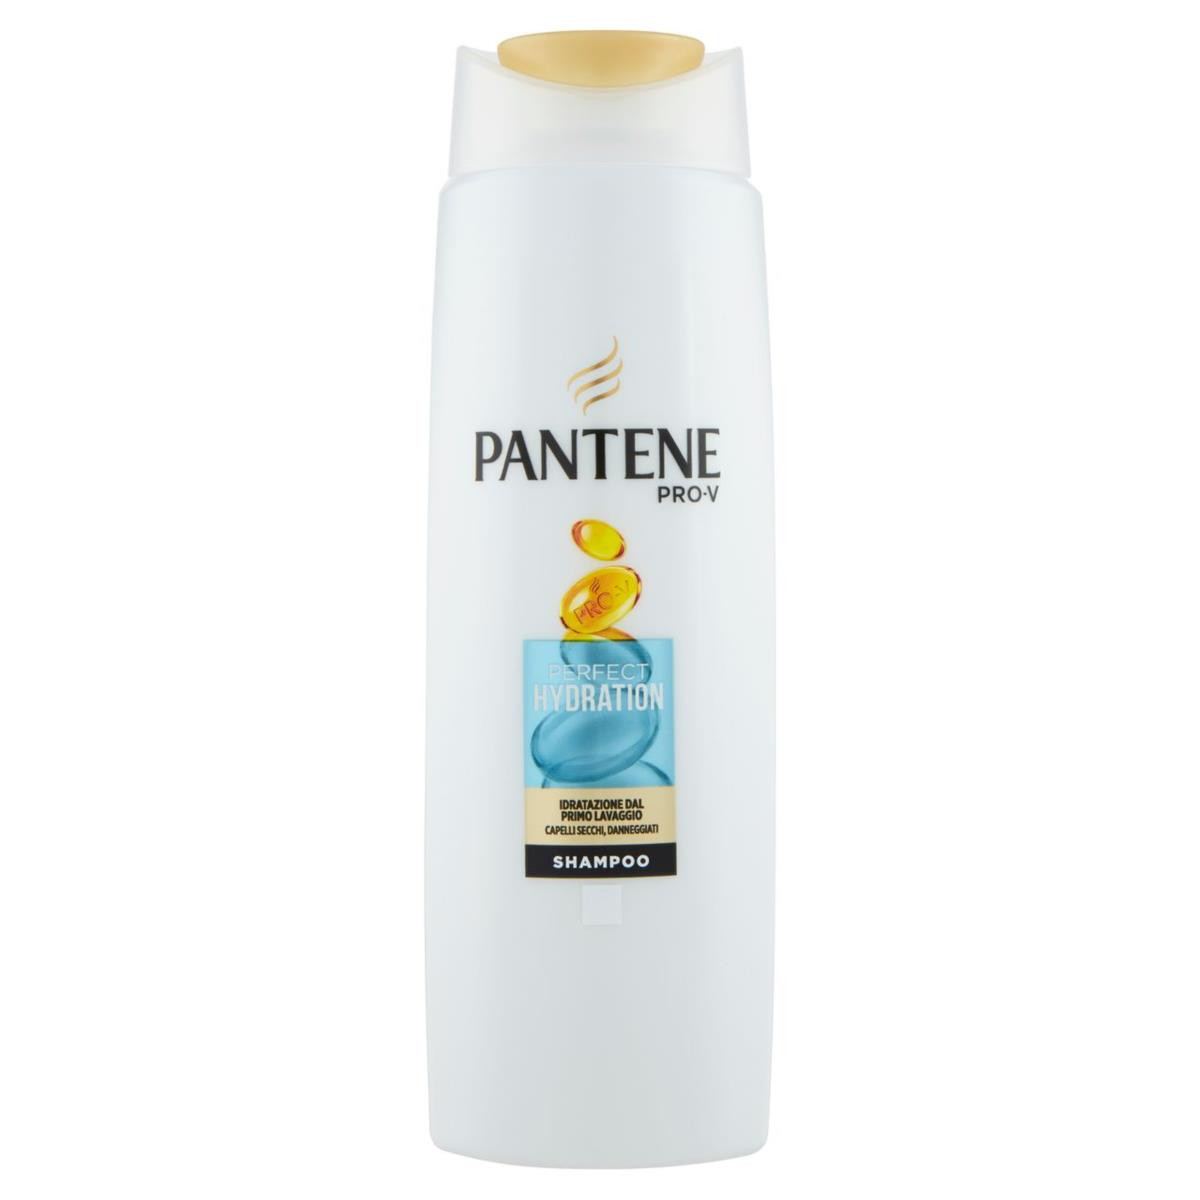 Pantene Pro-V Shampoo Perfect Hydration 250 ml